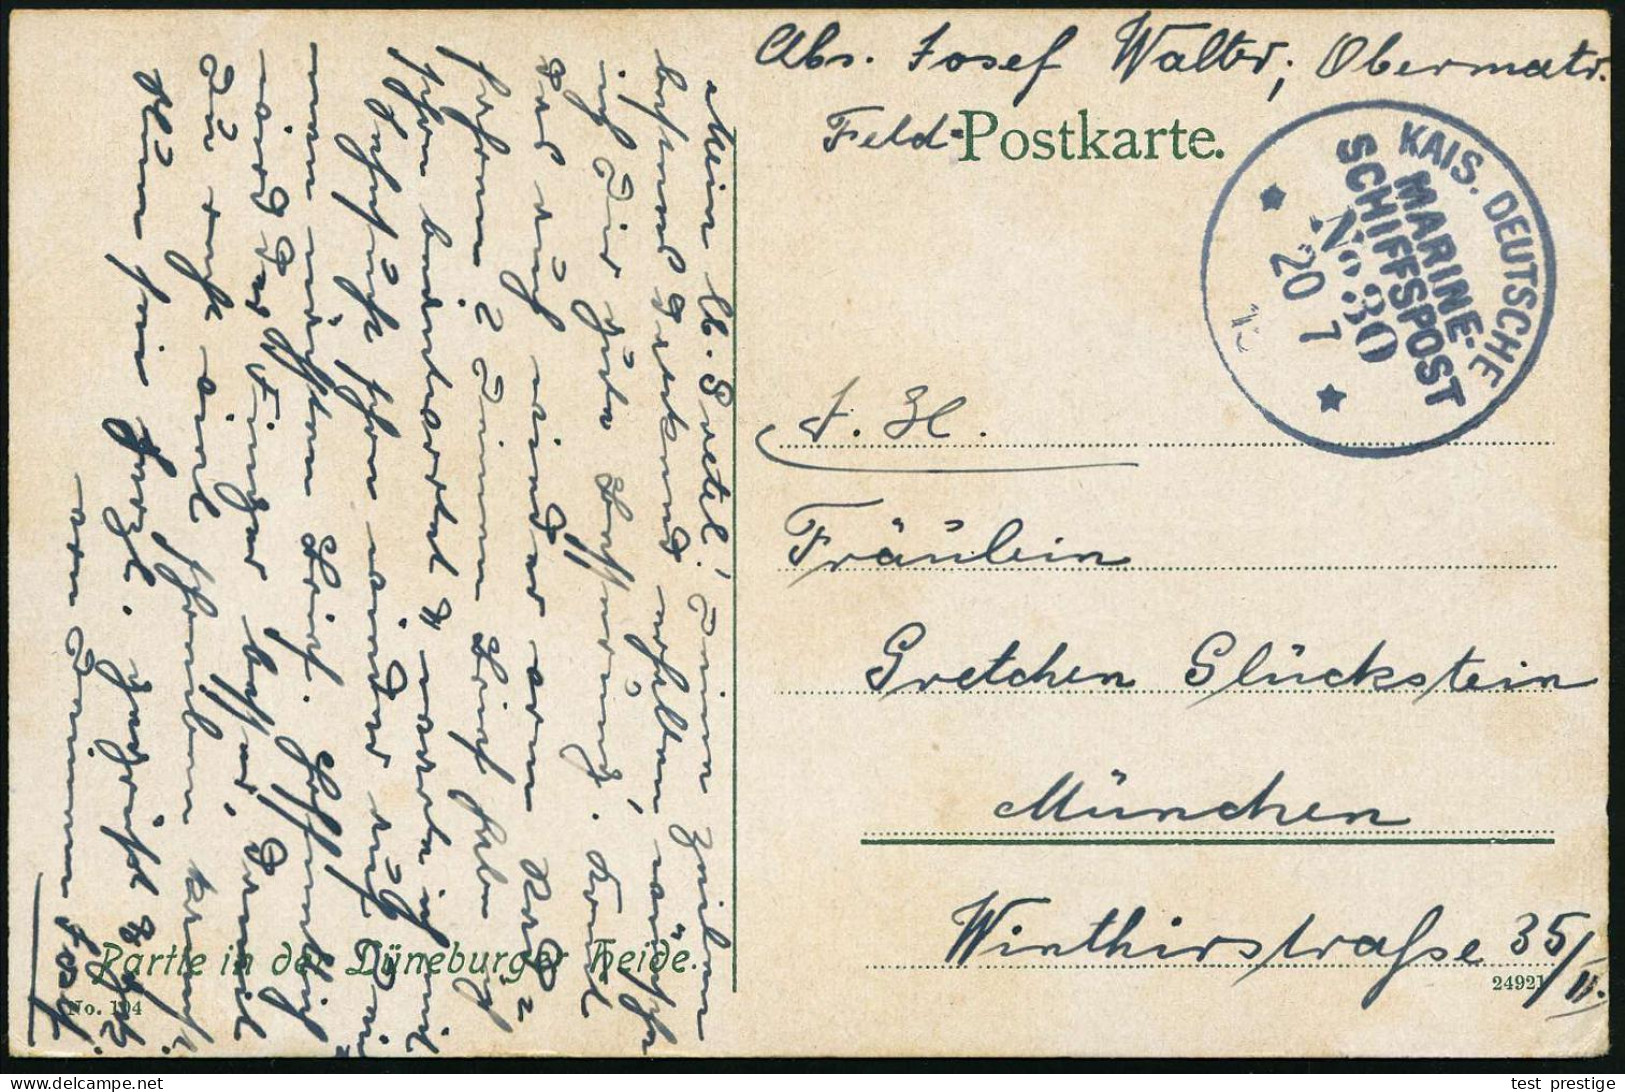 DEUTSCHES REICH 1915 (20.7.) 1K-BPA.: KAIS. DEUTSCHE/MARINE-/SCHIFFSPOST/No.30 = S.M.S. "Rheinland", Linienschiff (Apr.  - Maritime